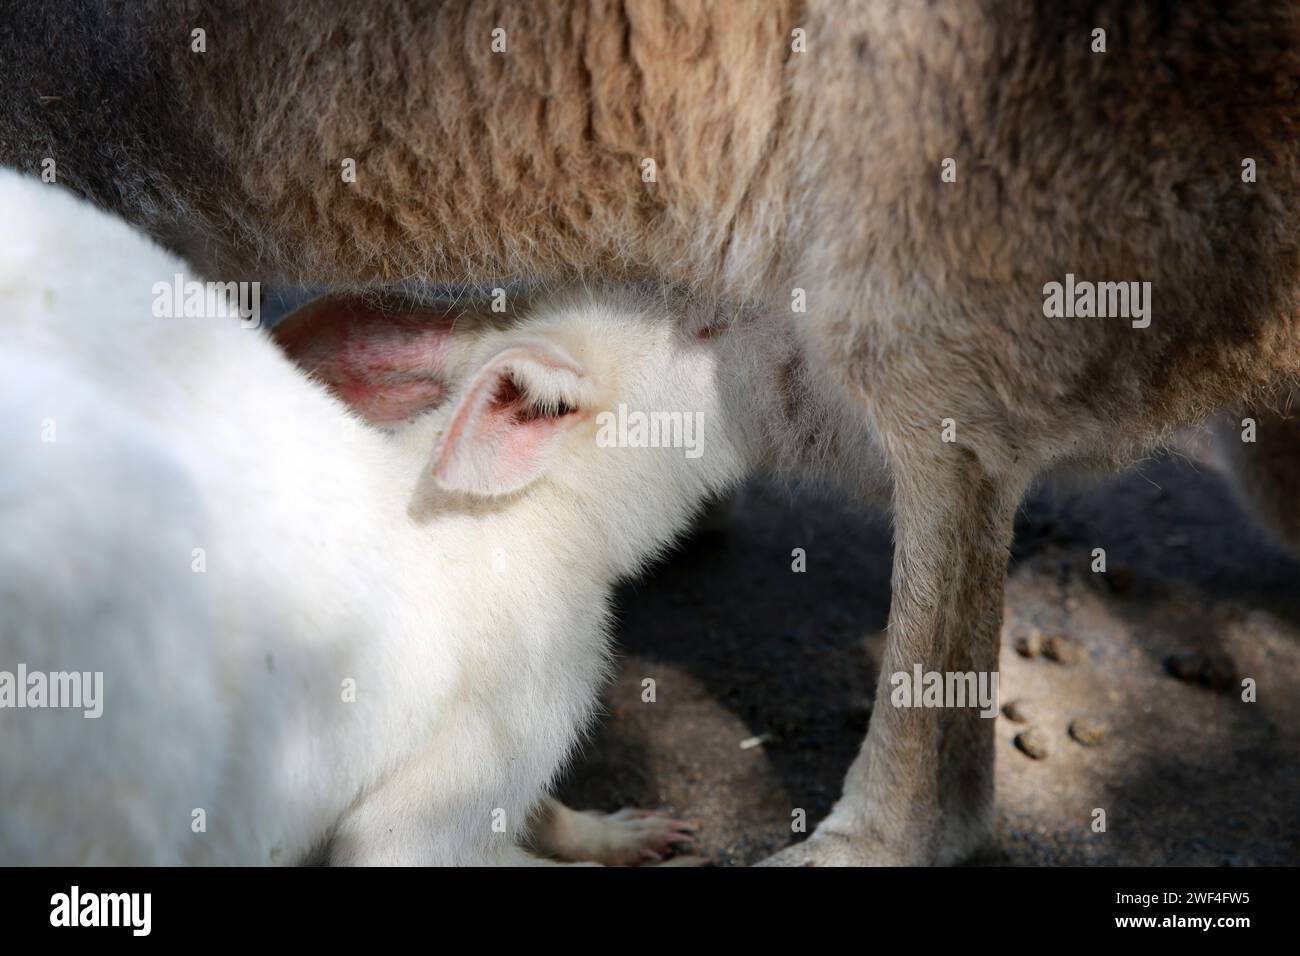 Kangaroo mum feeding her baby albino, , Australia Stock Photo